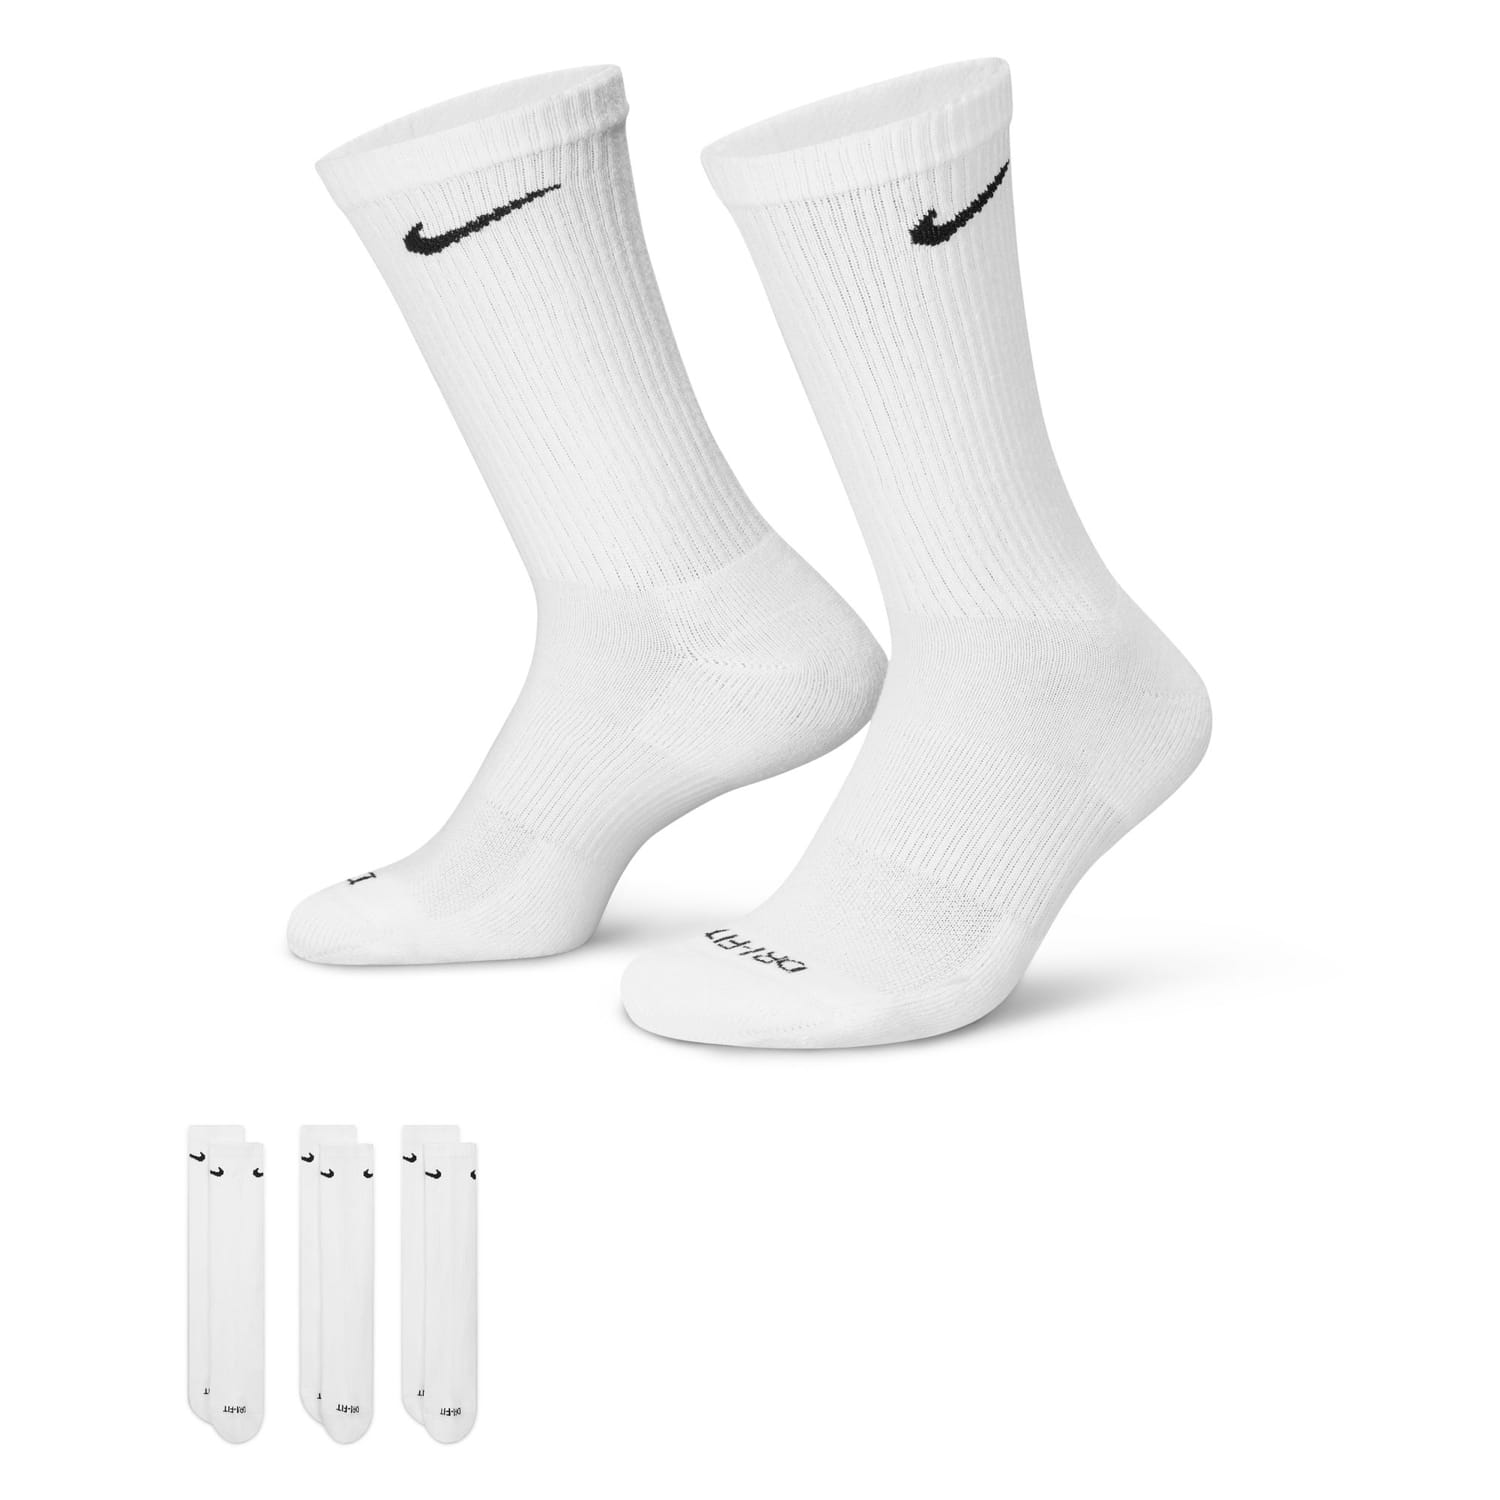  Nike Everyday Cushion Crew Training Socks, Unisex Nike Socks  with Sweat-Wicking Technology and Impact Cushioning (3 Pair), Black/White,  Large : Clothing, Shoes & Jewelry